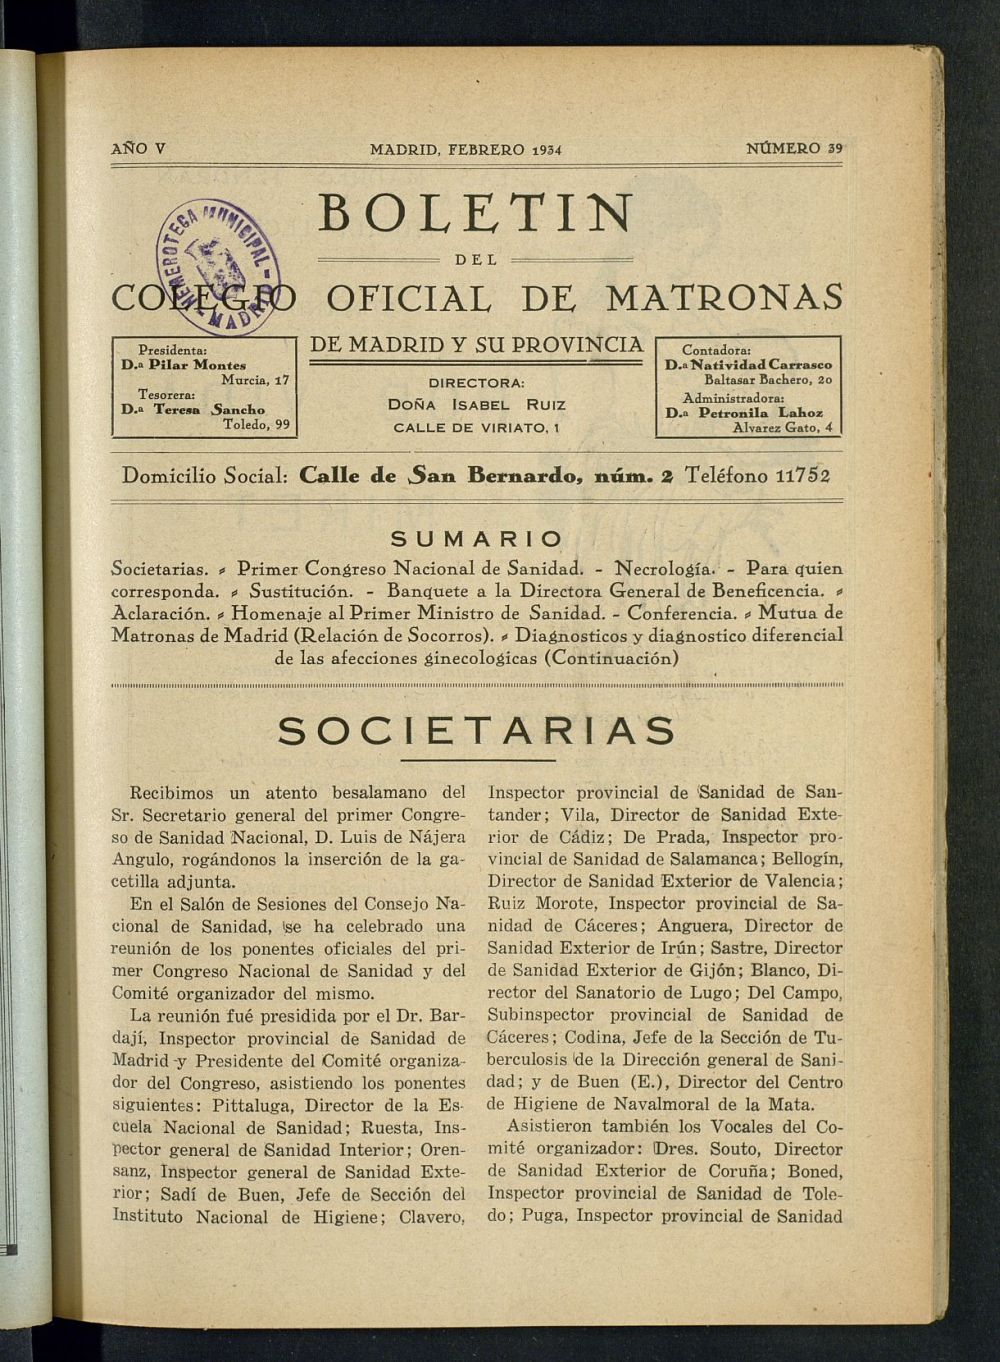 Boletn del Colegio Oficial de Matronas de Madrid y su Provincia de febrero de 1934